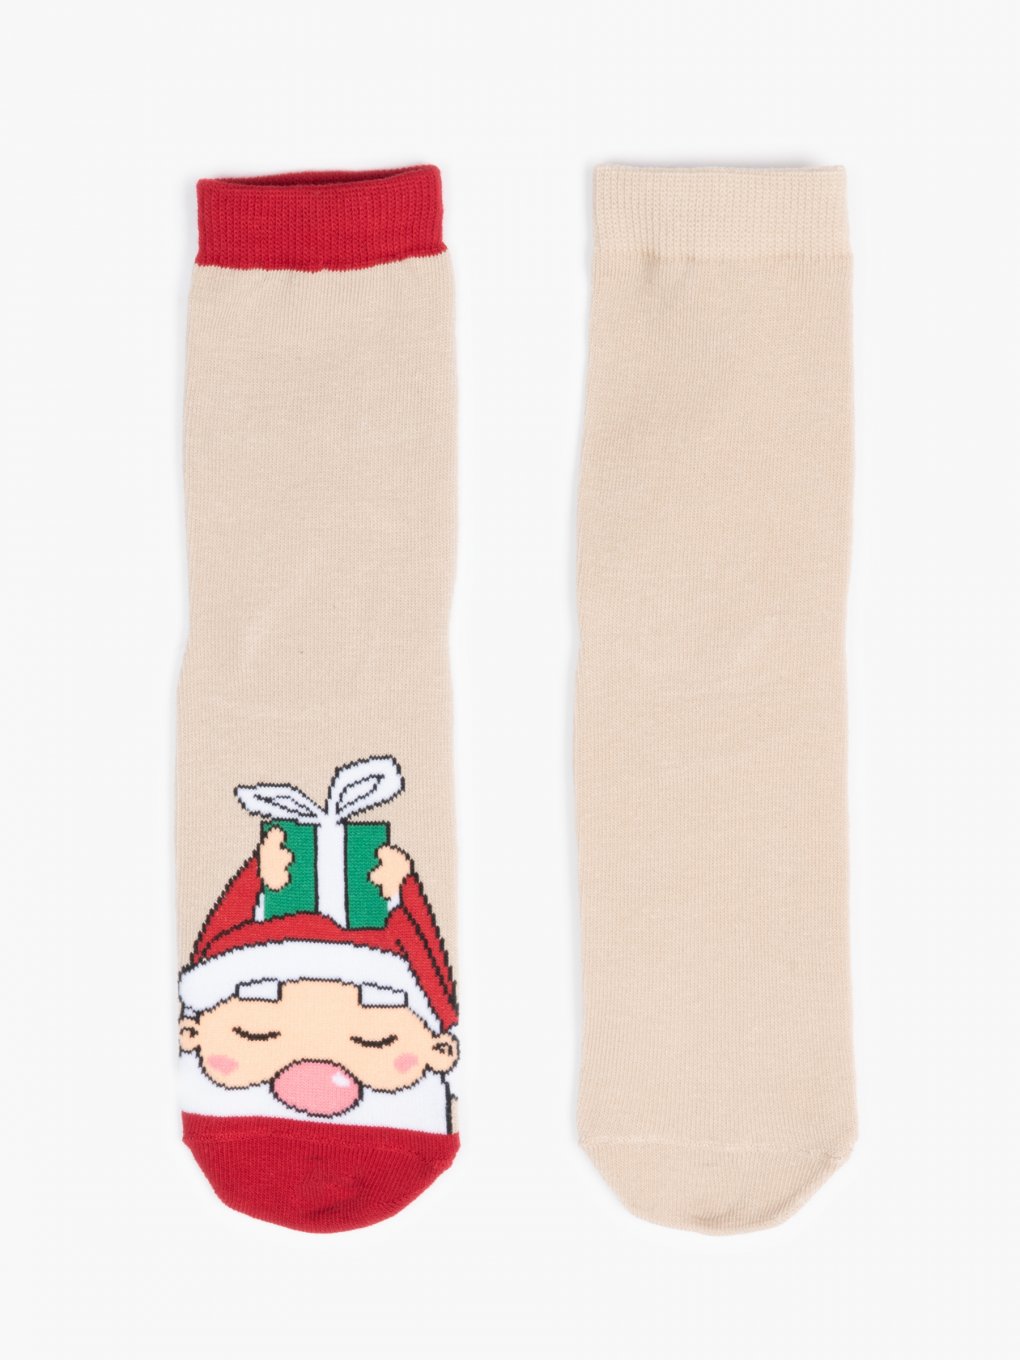 2-pack christmas socks